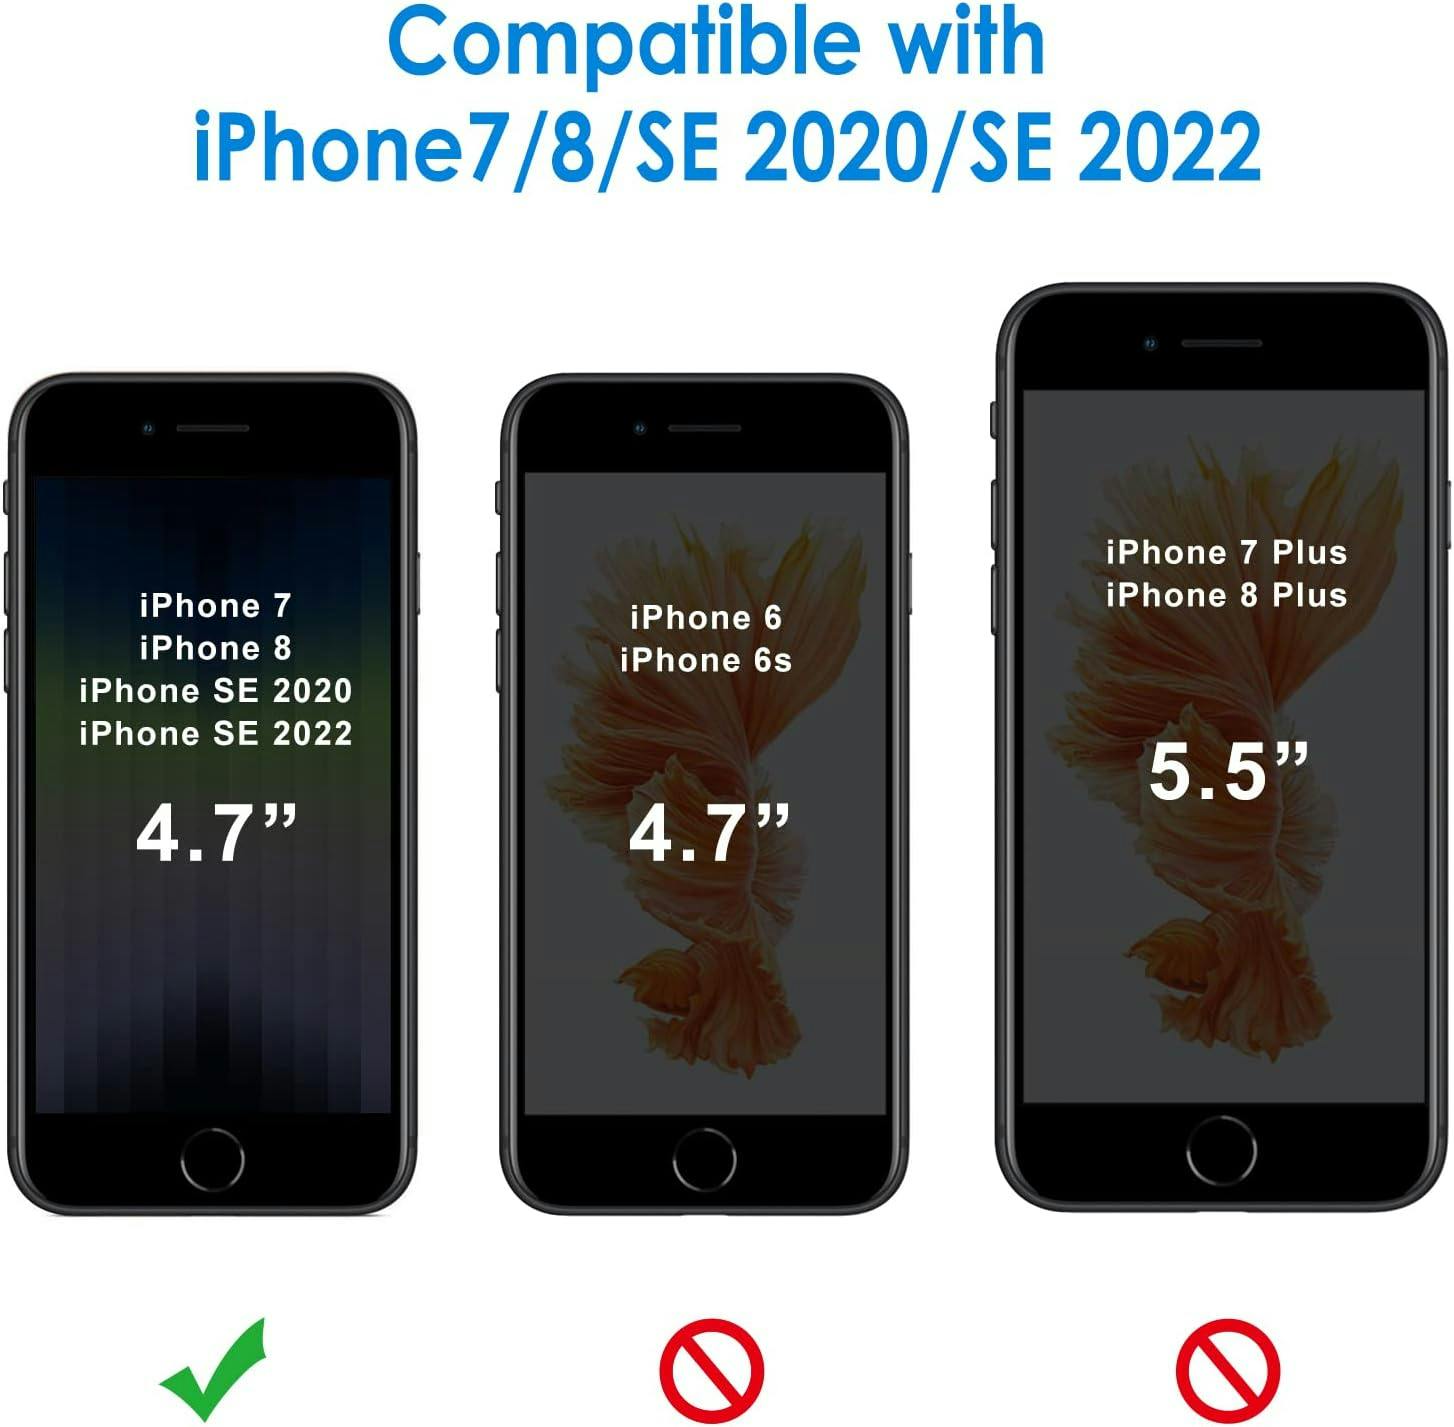 iPhone 7/8/SE (2020) läpinäkyvä pehmeä, ohut kotelo TPU:lla